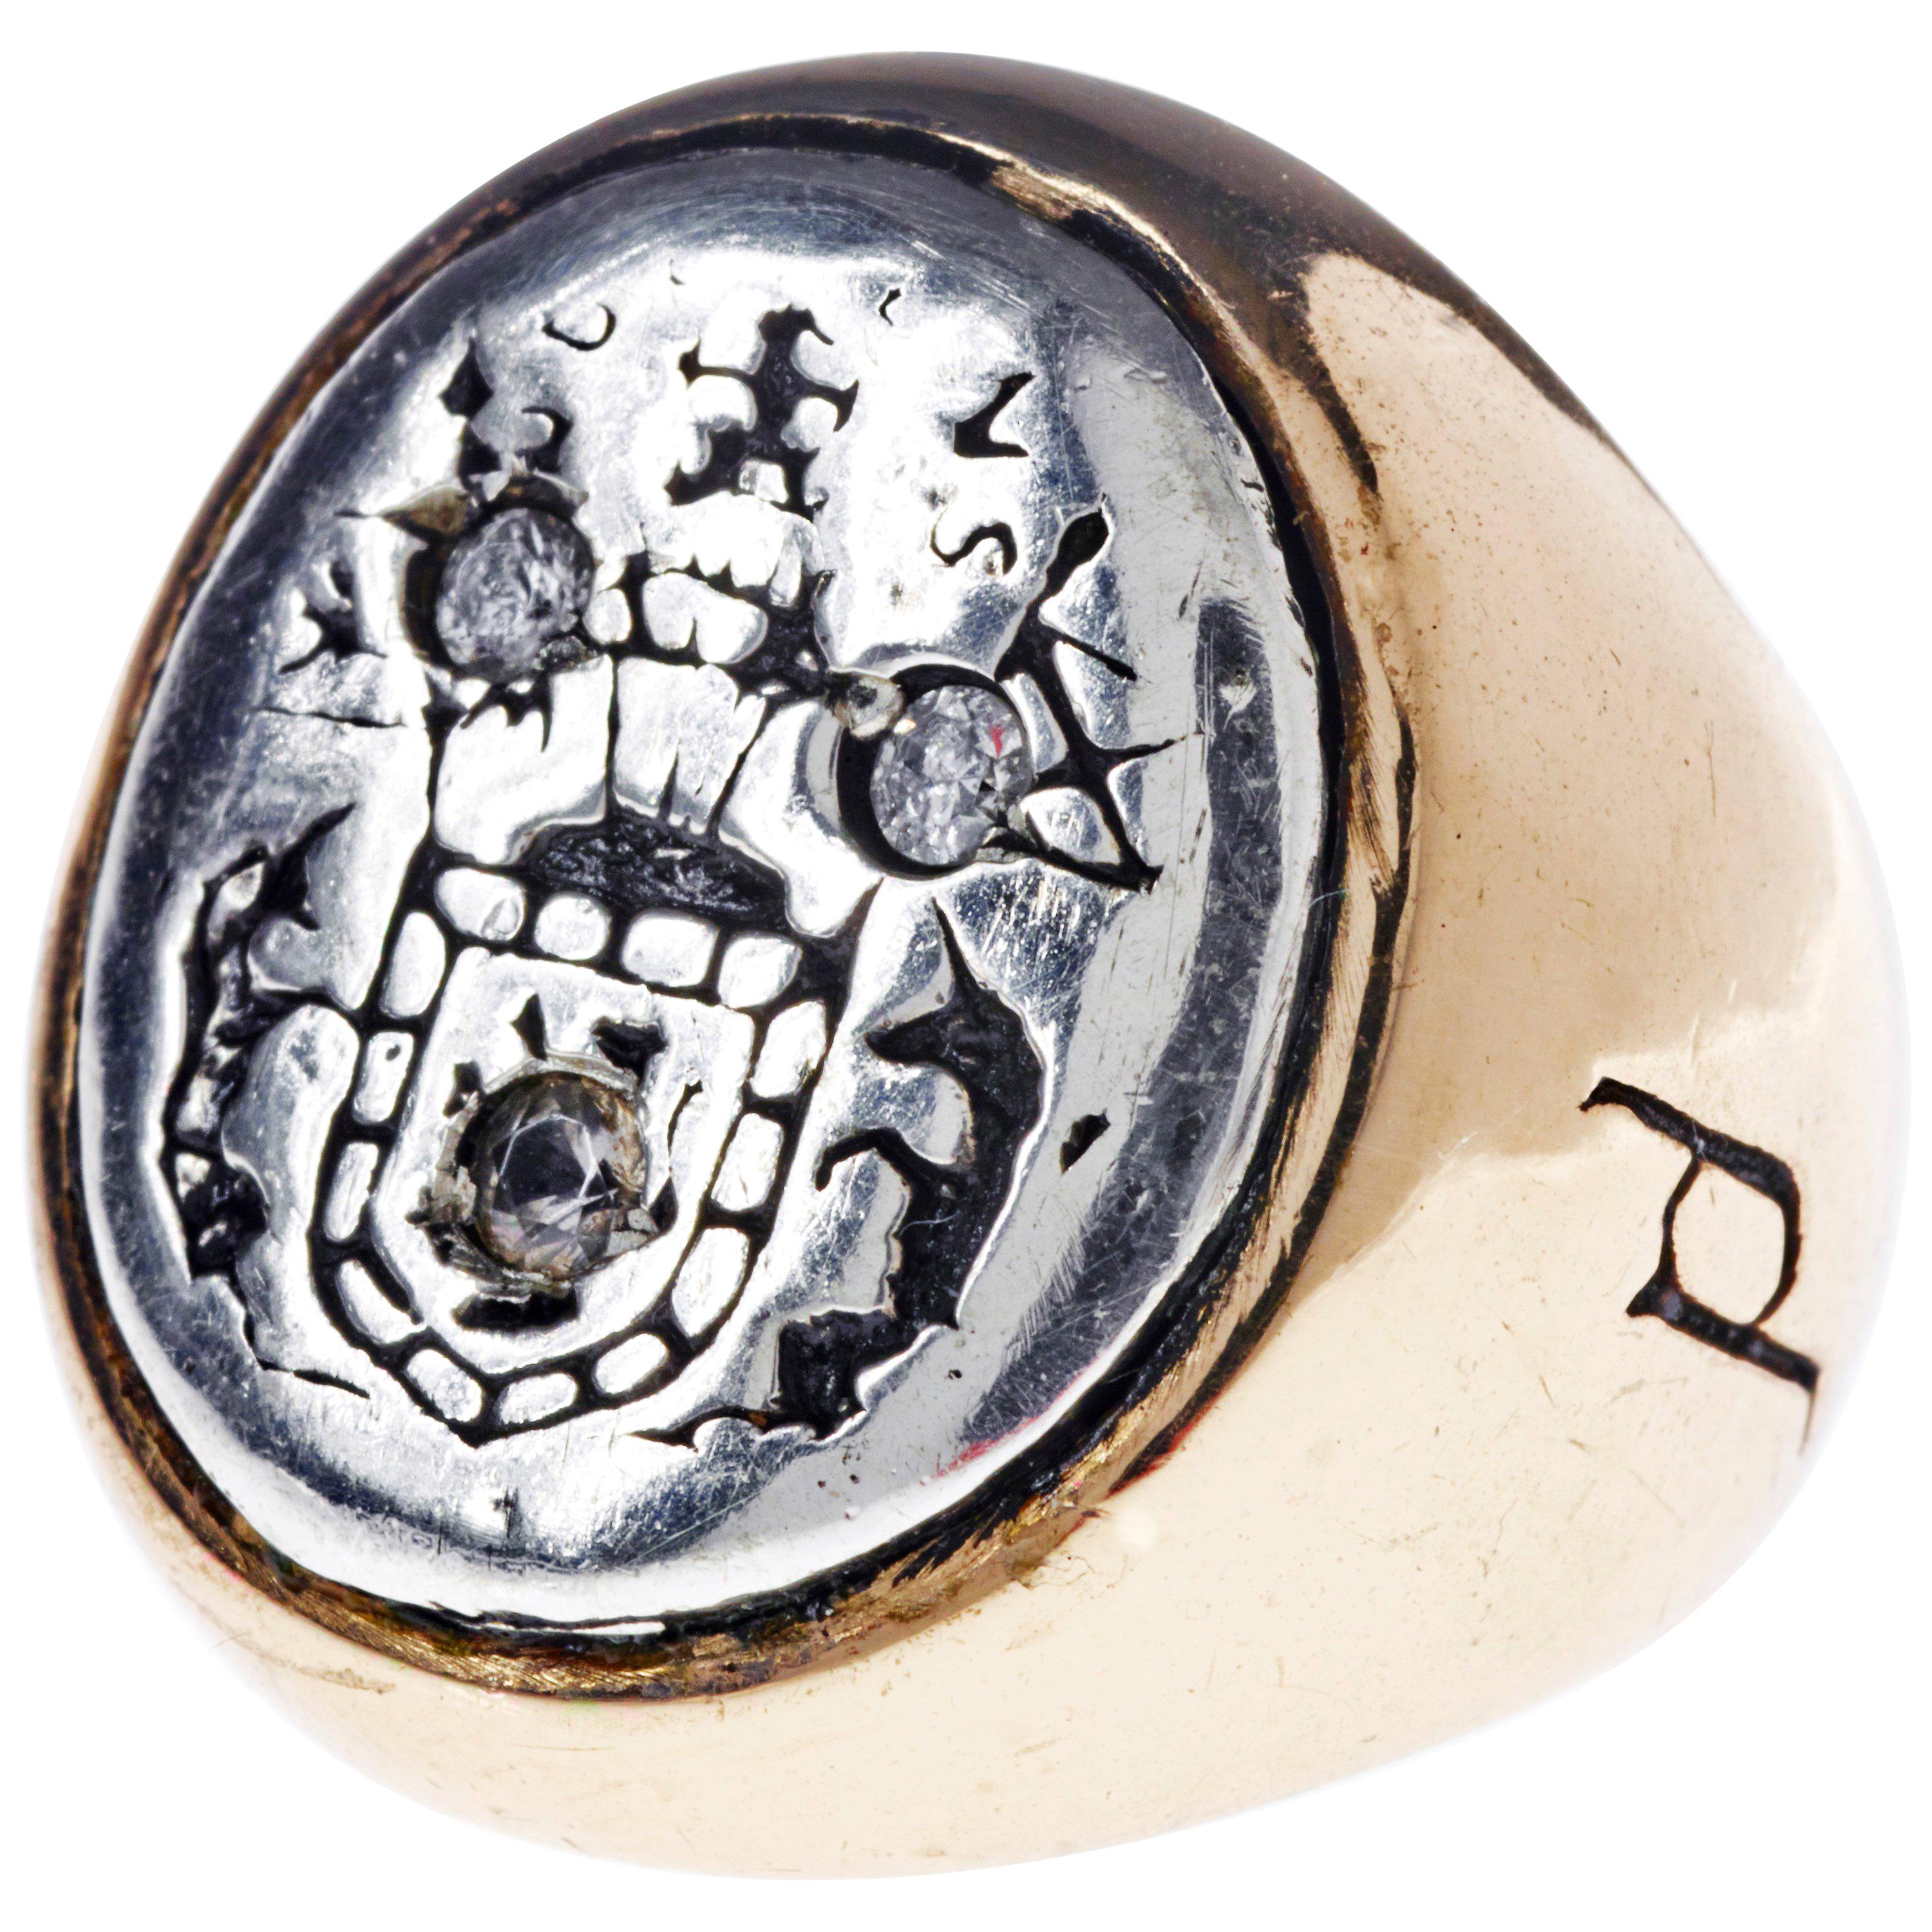 White Sapphire Crest Signet Ring Silver Bronze J Dauphin peut être porté par les femmes ou les hommes.

Inspiré de la bague de la reine Marie d'Écosse. Bague sigillaire en or ; gravée ; épaules ornées de fleurs et de feuilles. Lunette ovale sertie